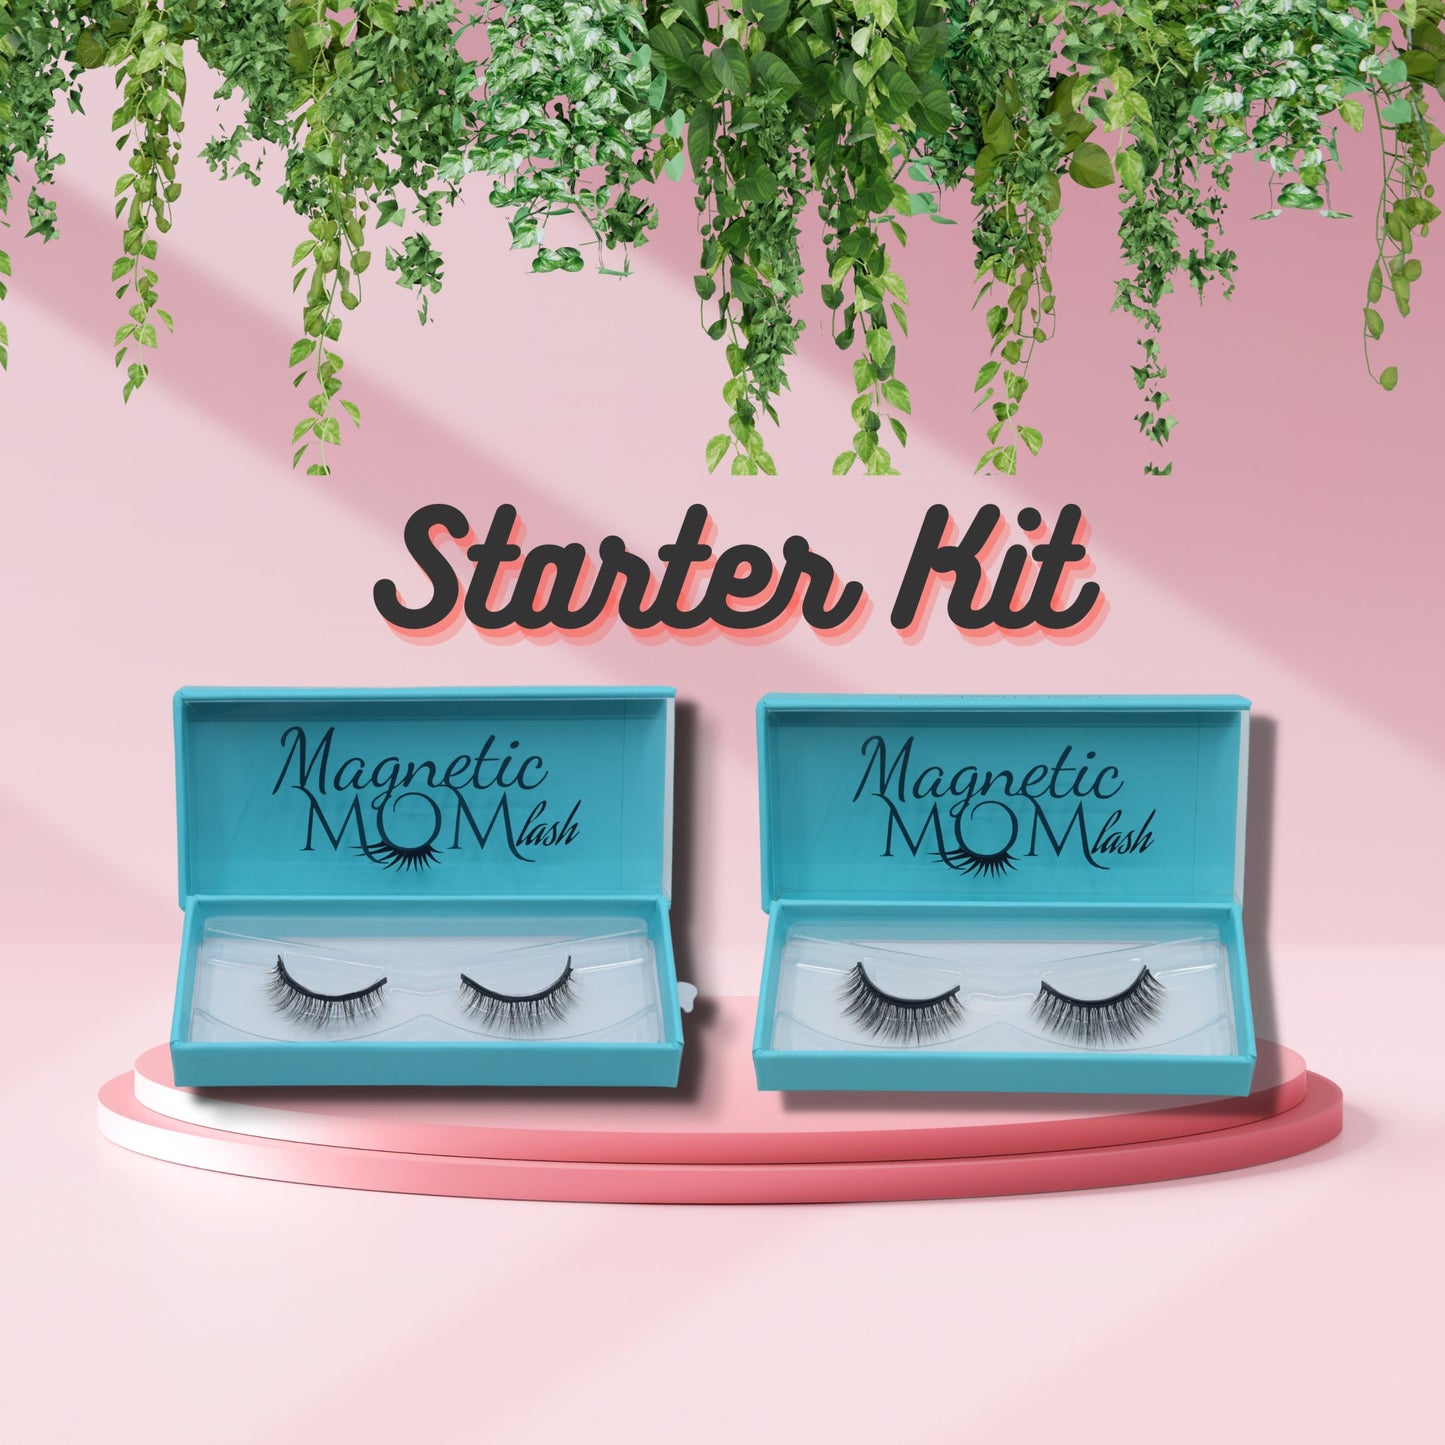 Starter Kit - Magnetic Mom Lash